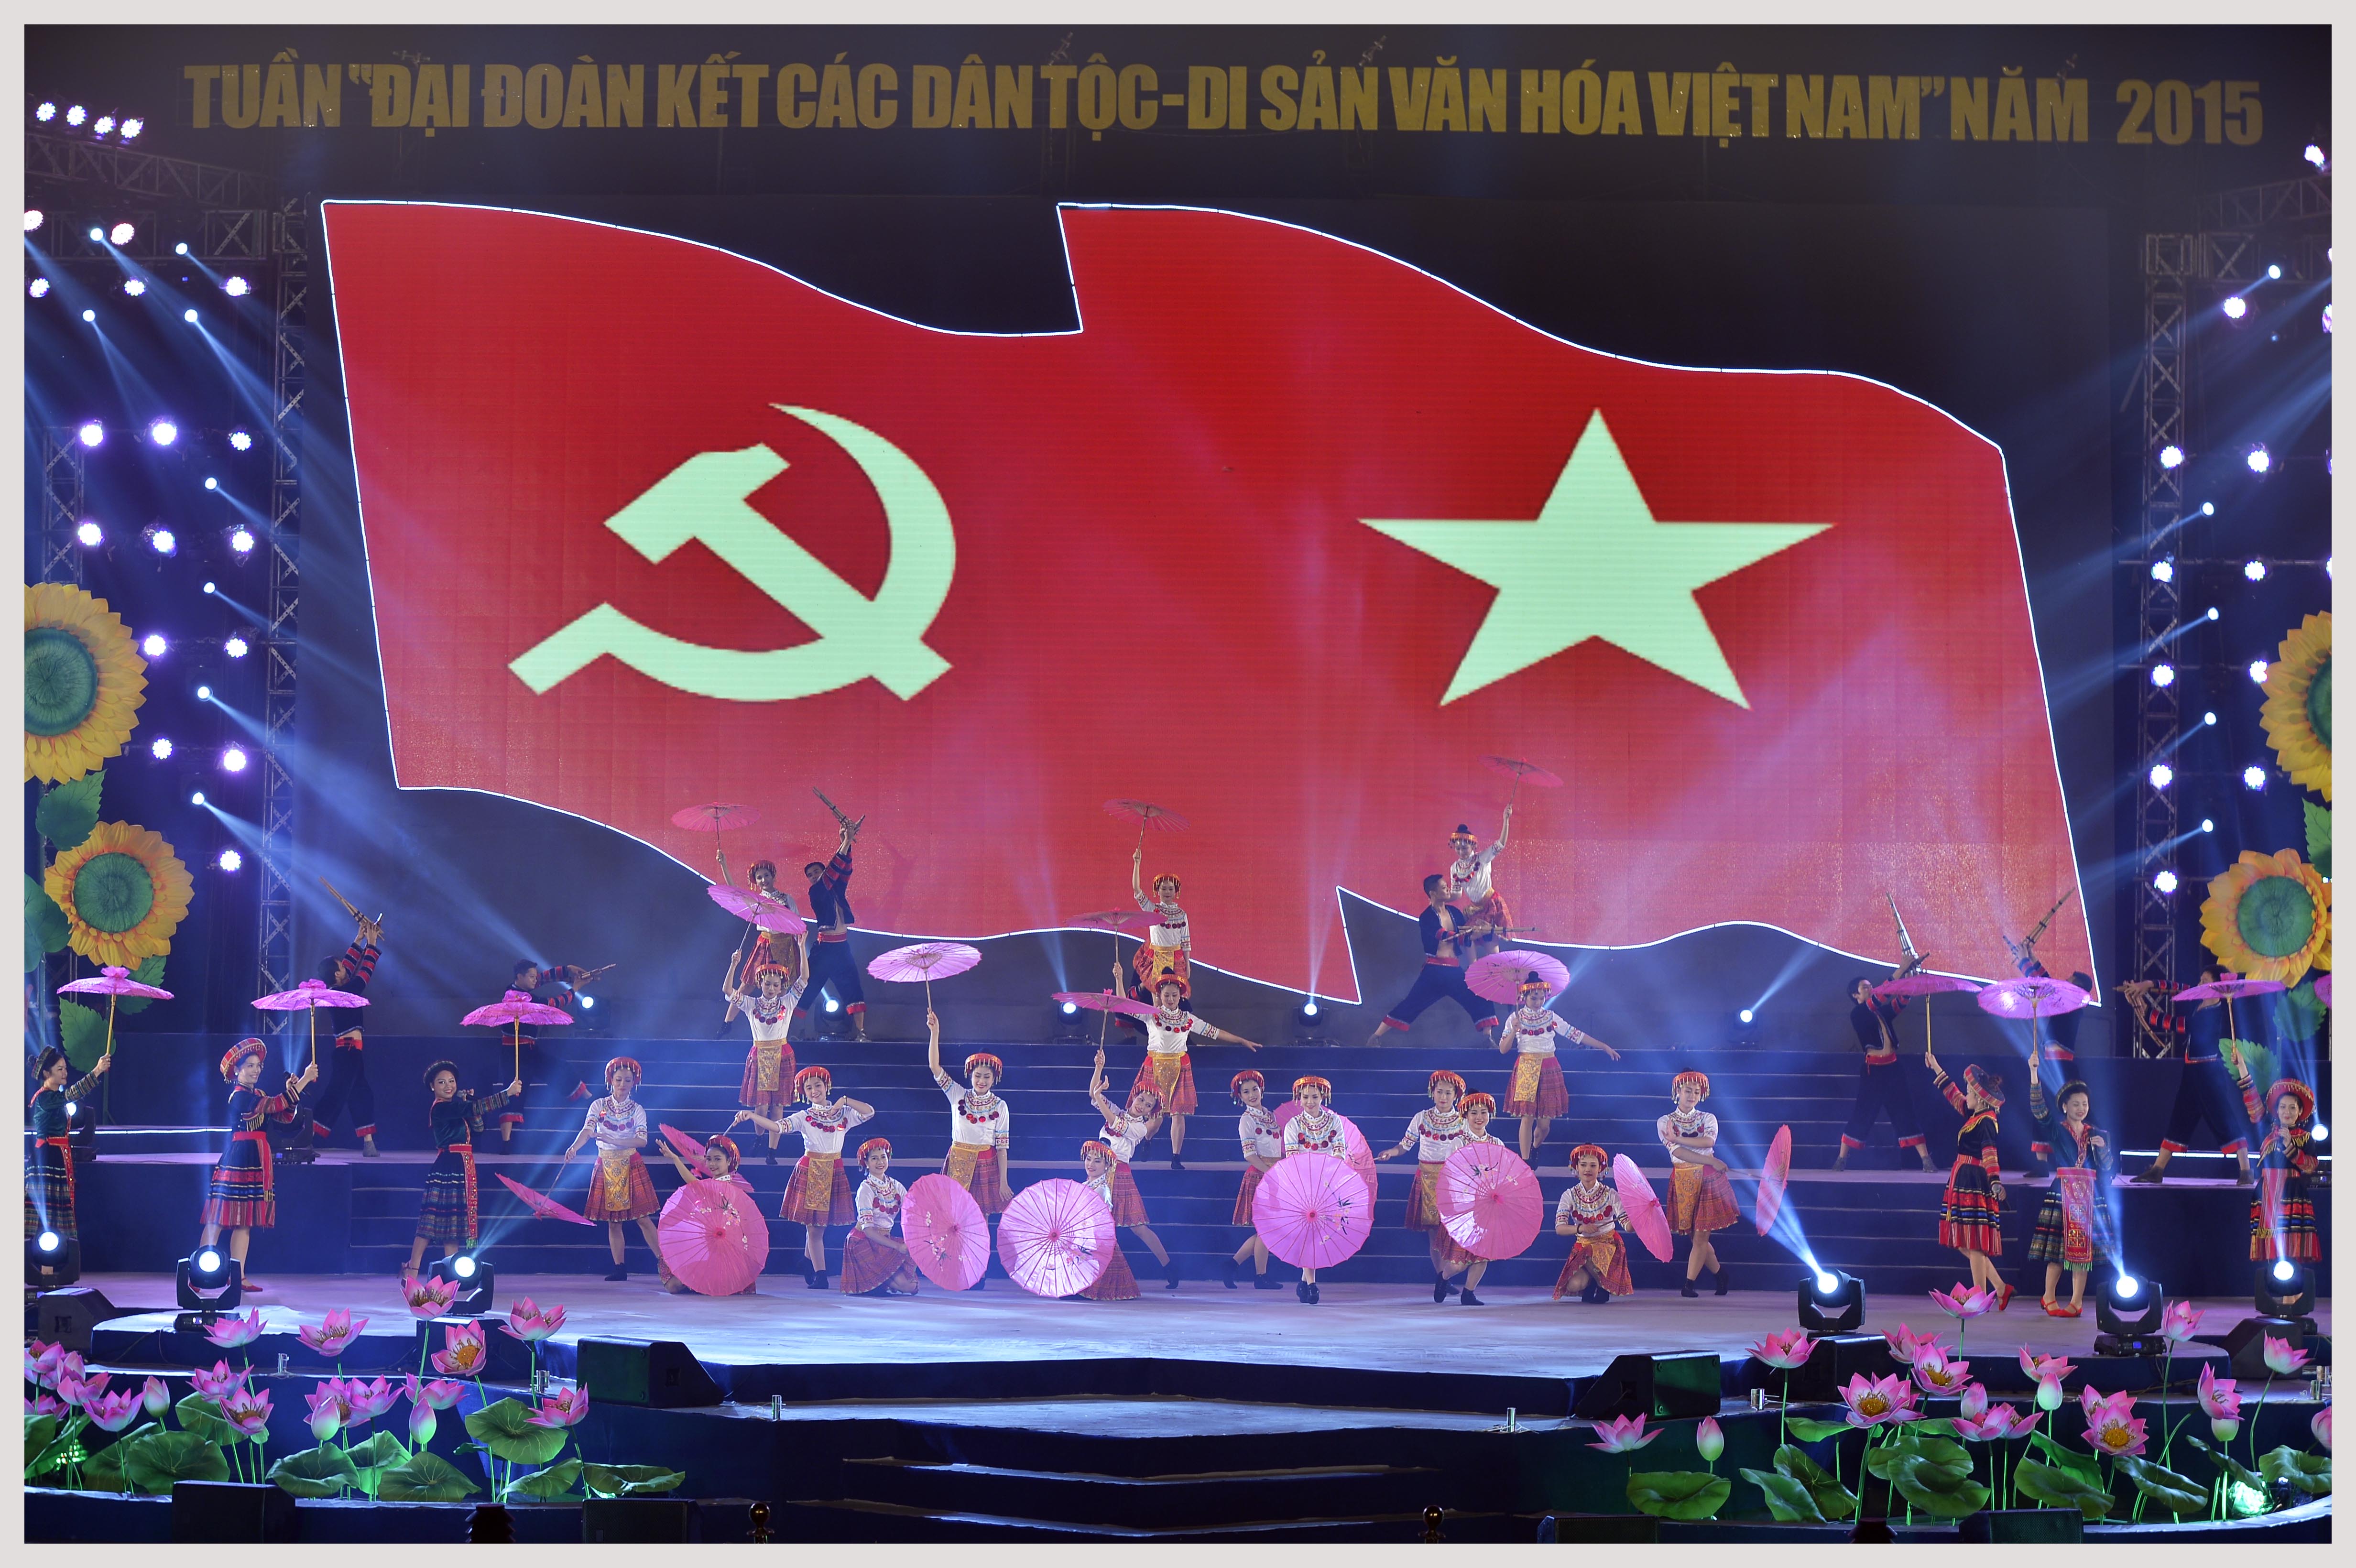 Dân tộc Mông tham dự tuần đại đoàn kết các dân tộc  - Di sản văn hoá Việt Nam 2015